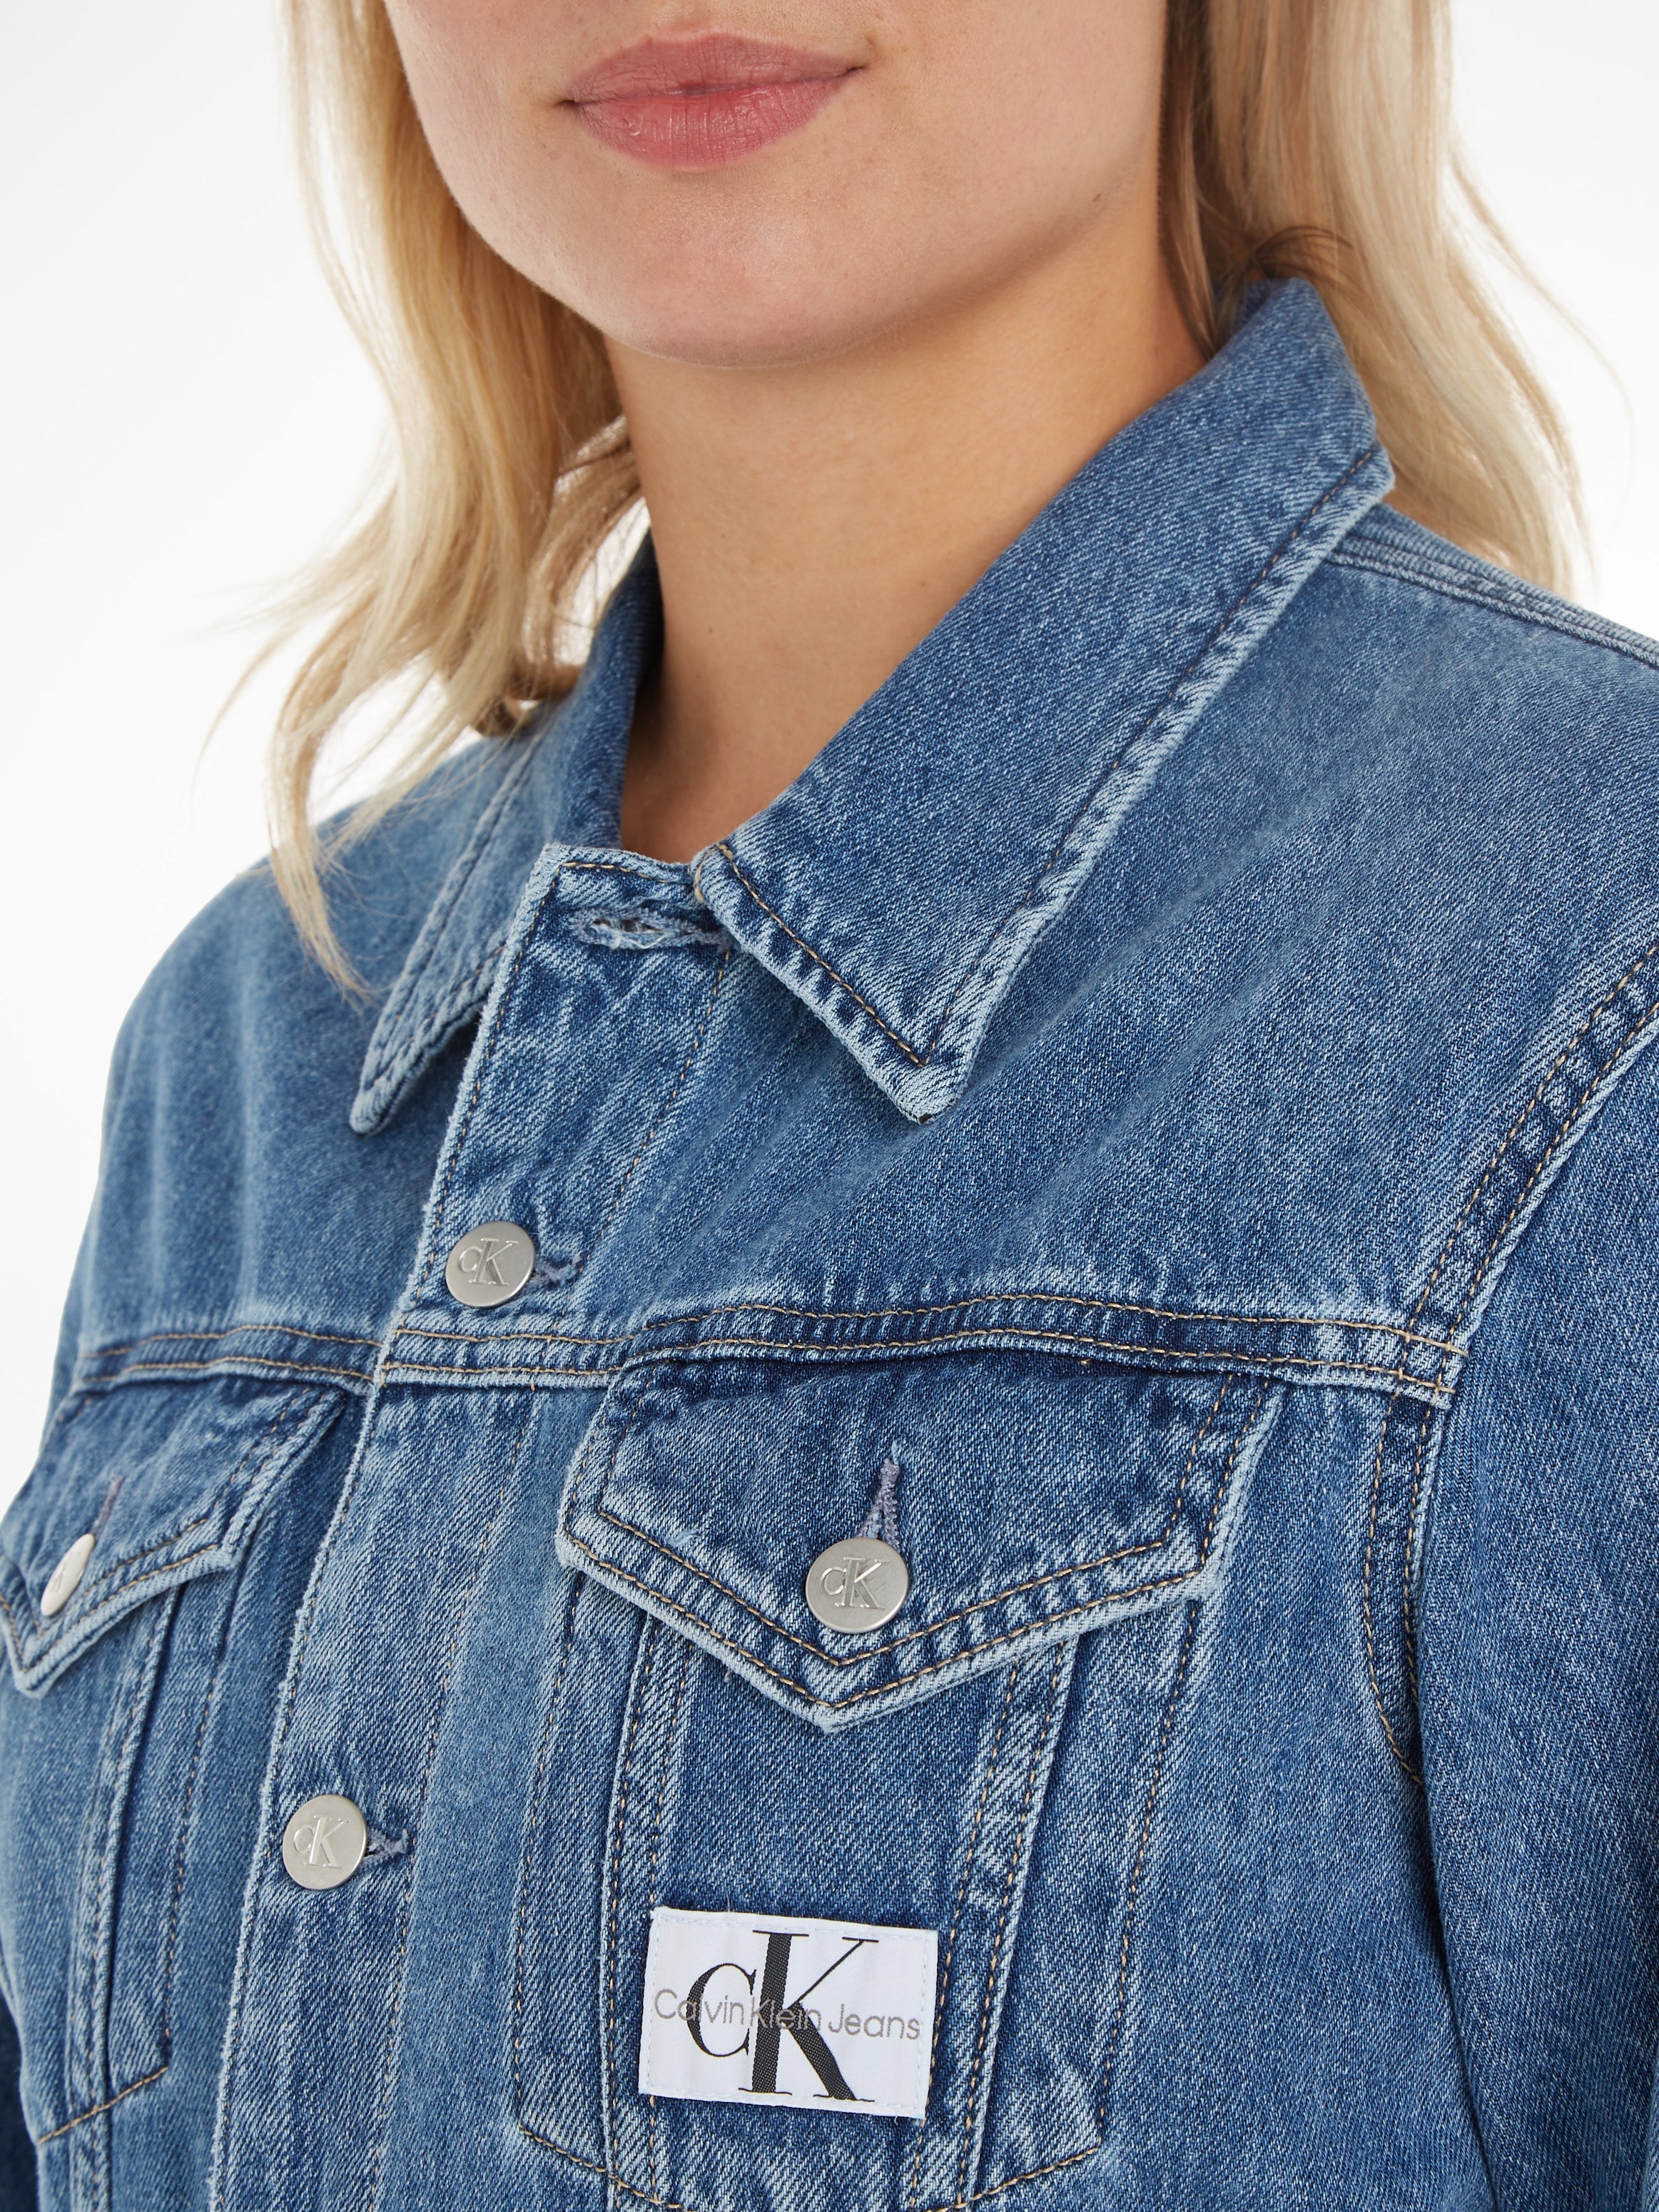 Calvin Klein Jeans Jeanskleid »TRUCKER DRESS« kaufen | BAUR